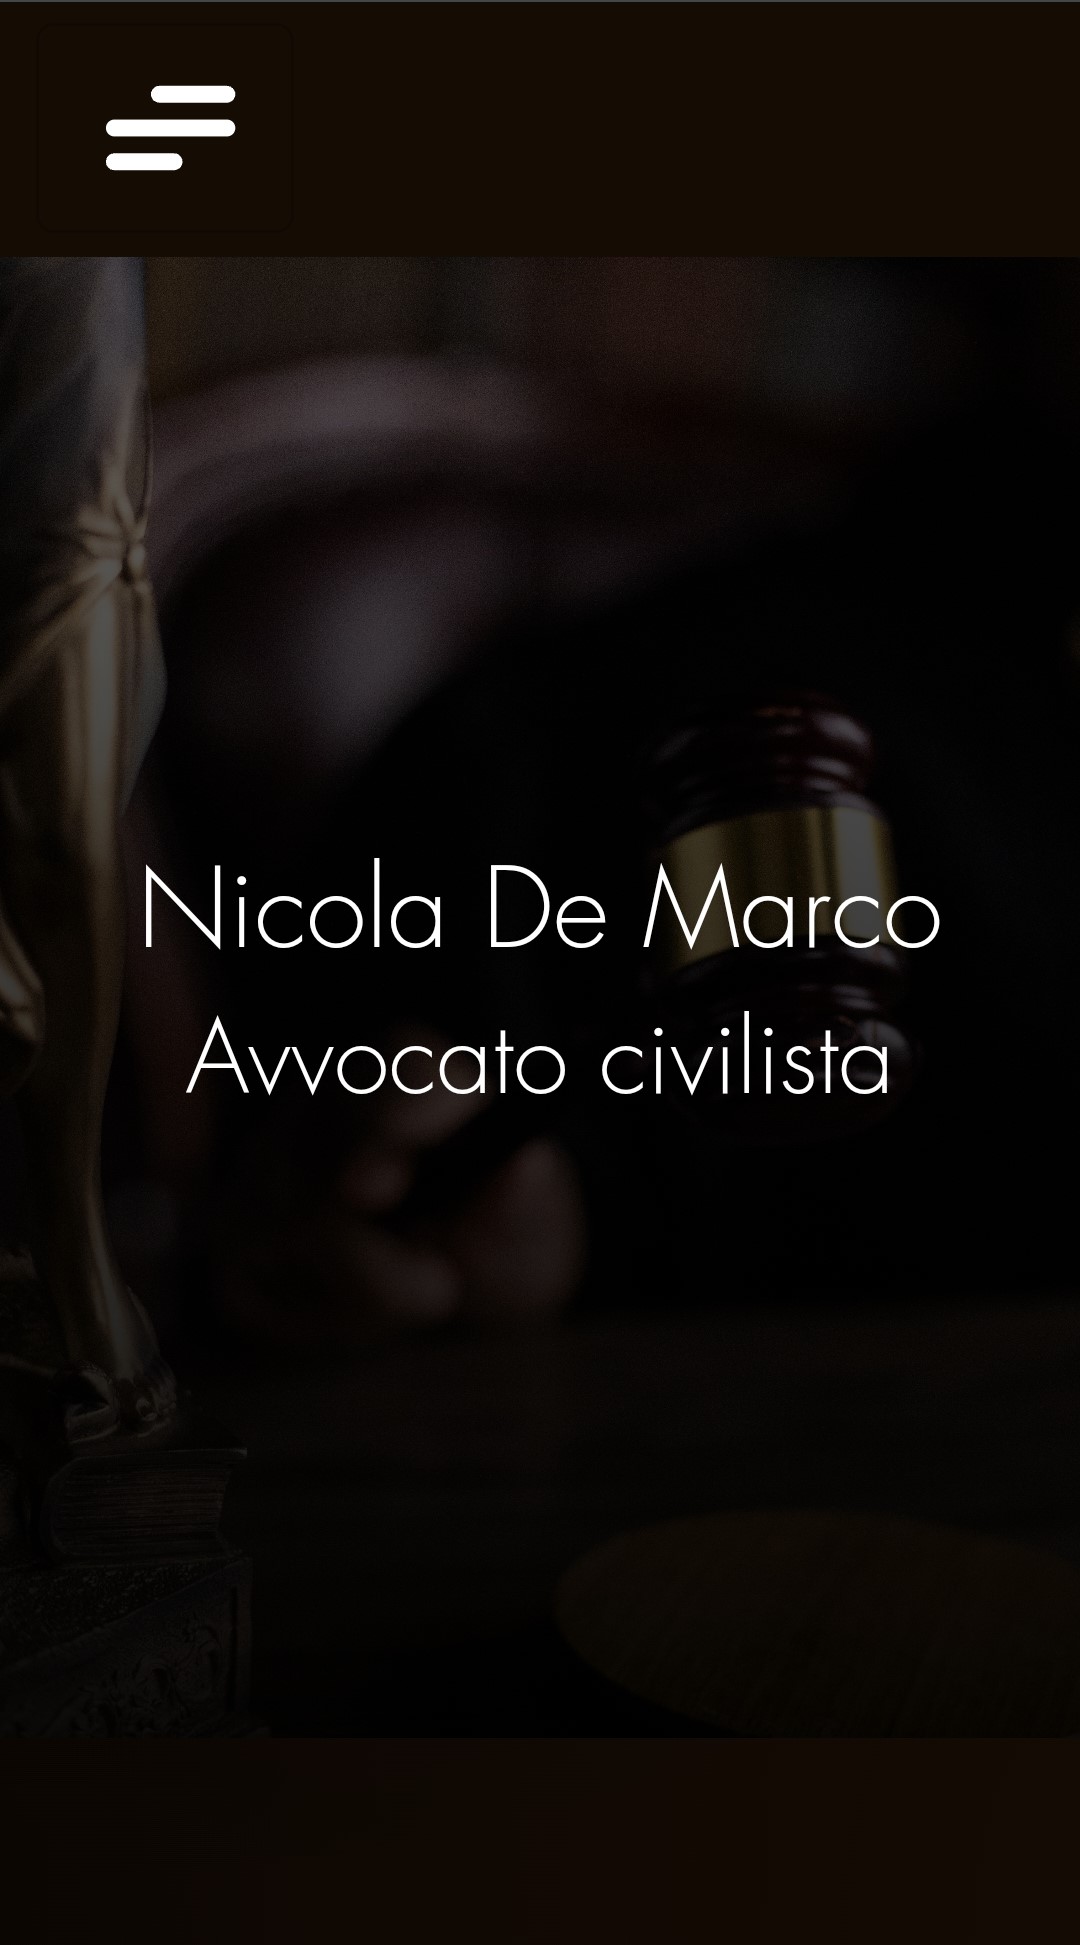 Image of Lawyer Nicola DeMarco's website